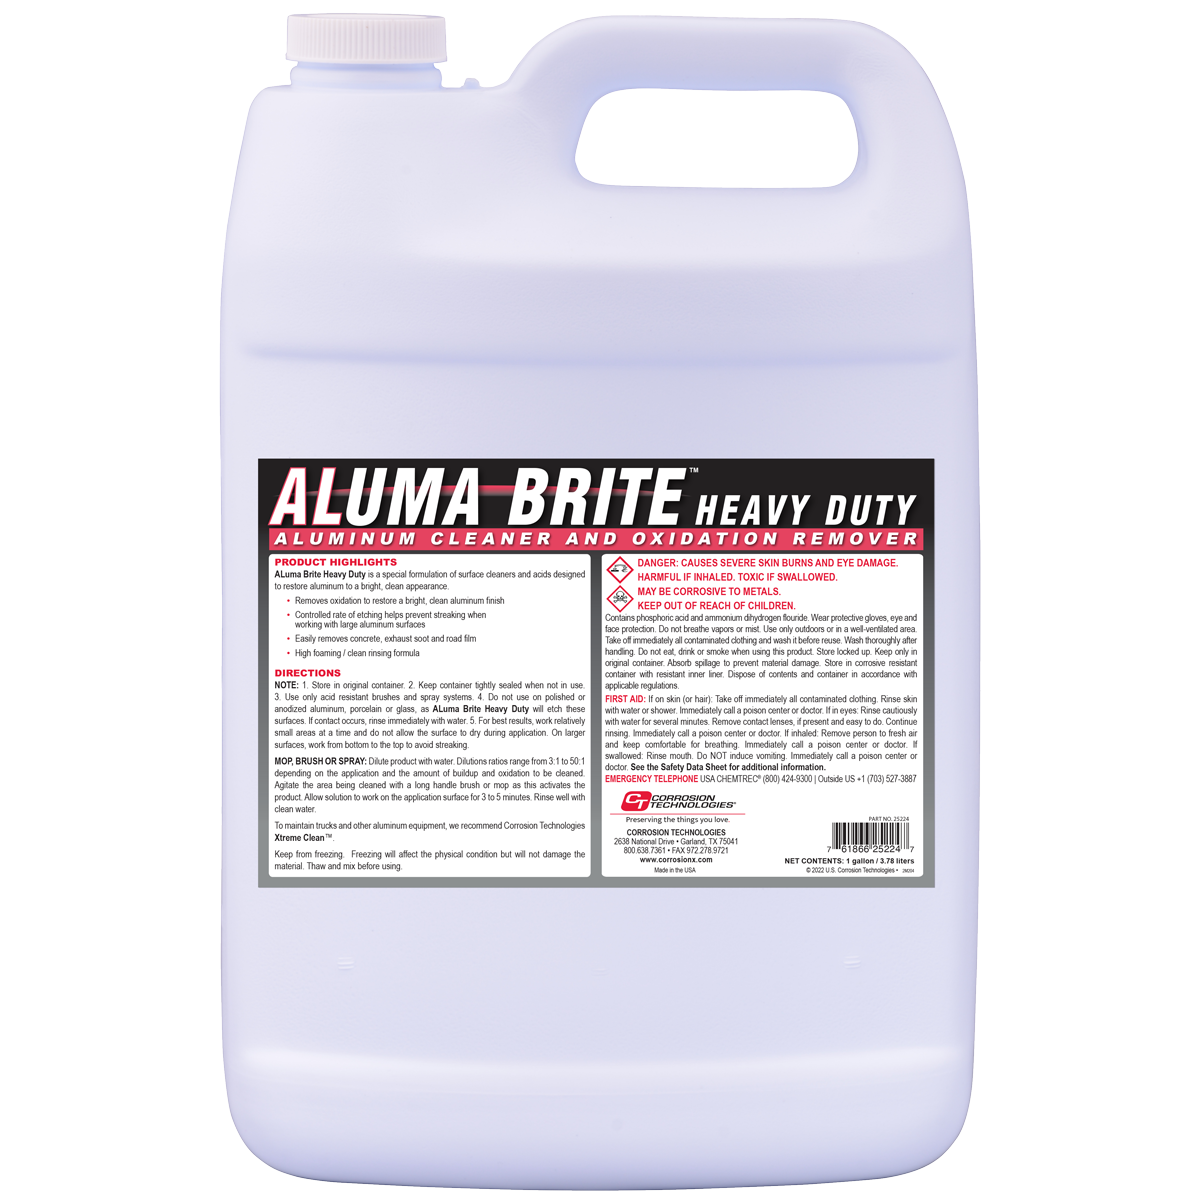 Aluma Brite Heavy Duty Aluminum Cleaner and Oxidation Remover 1 Gallon